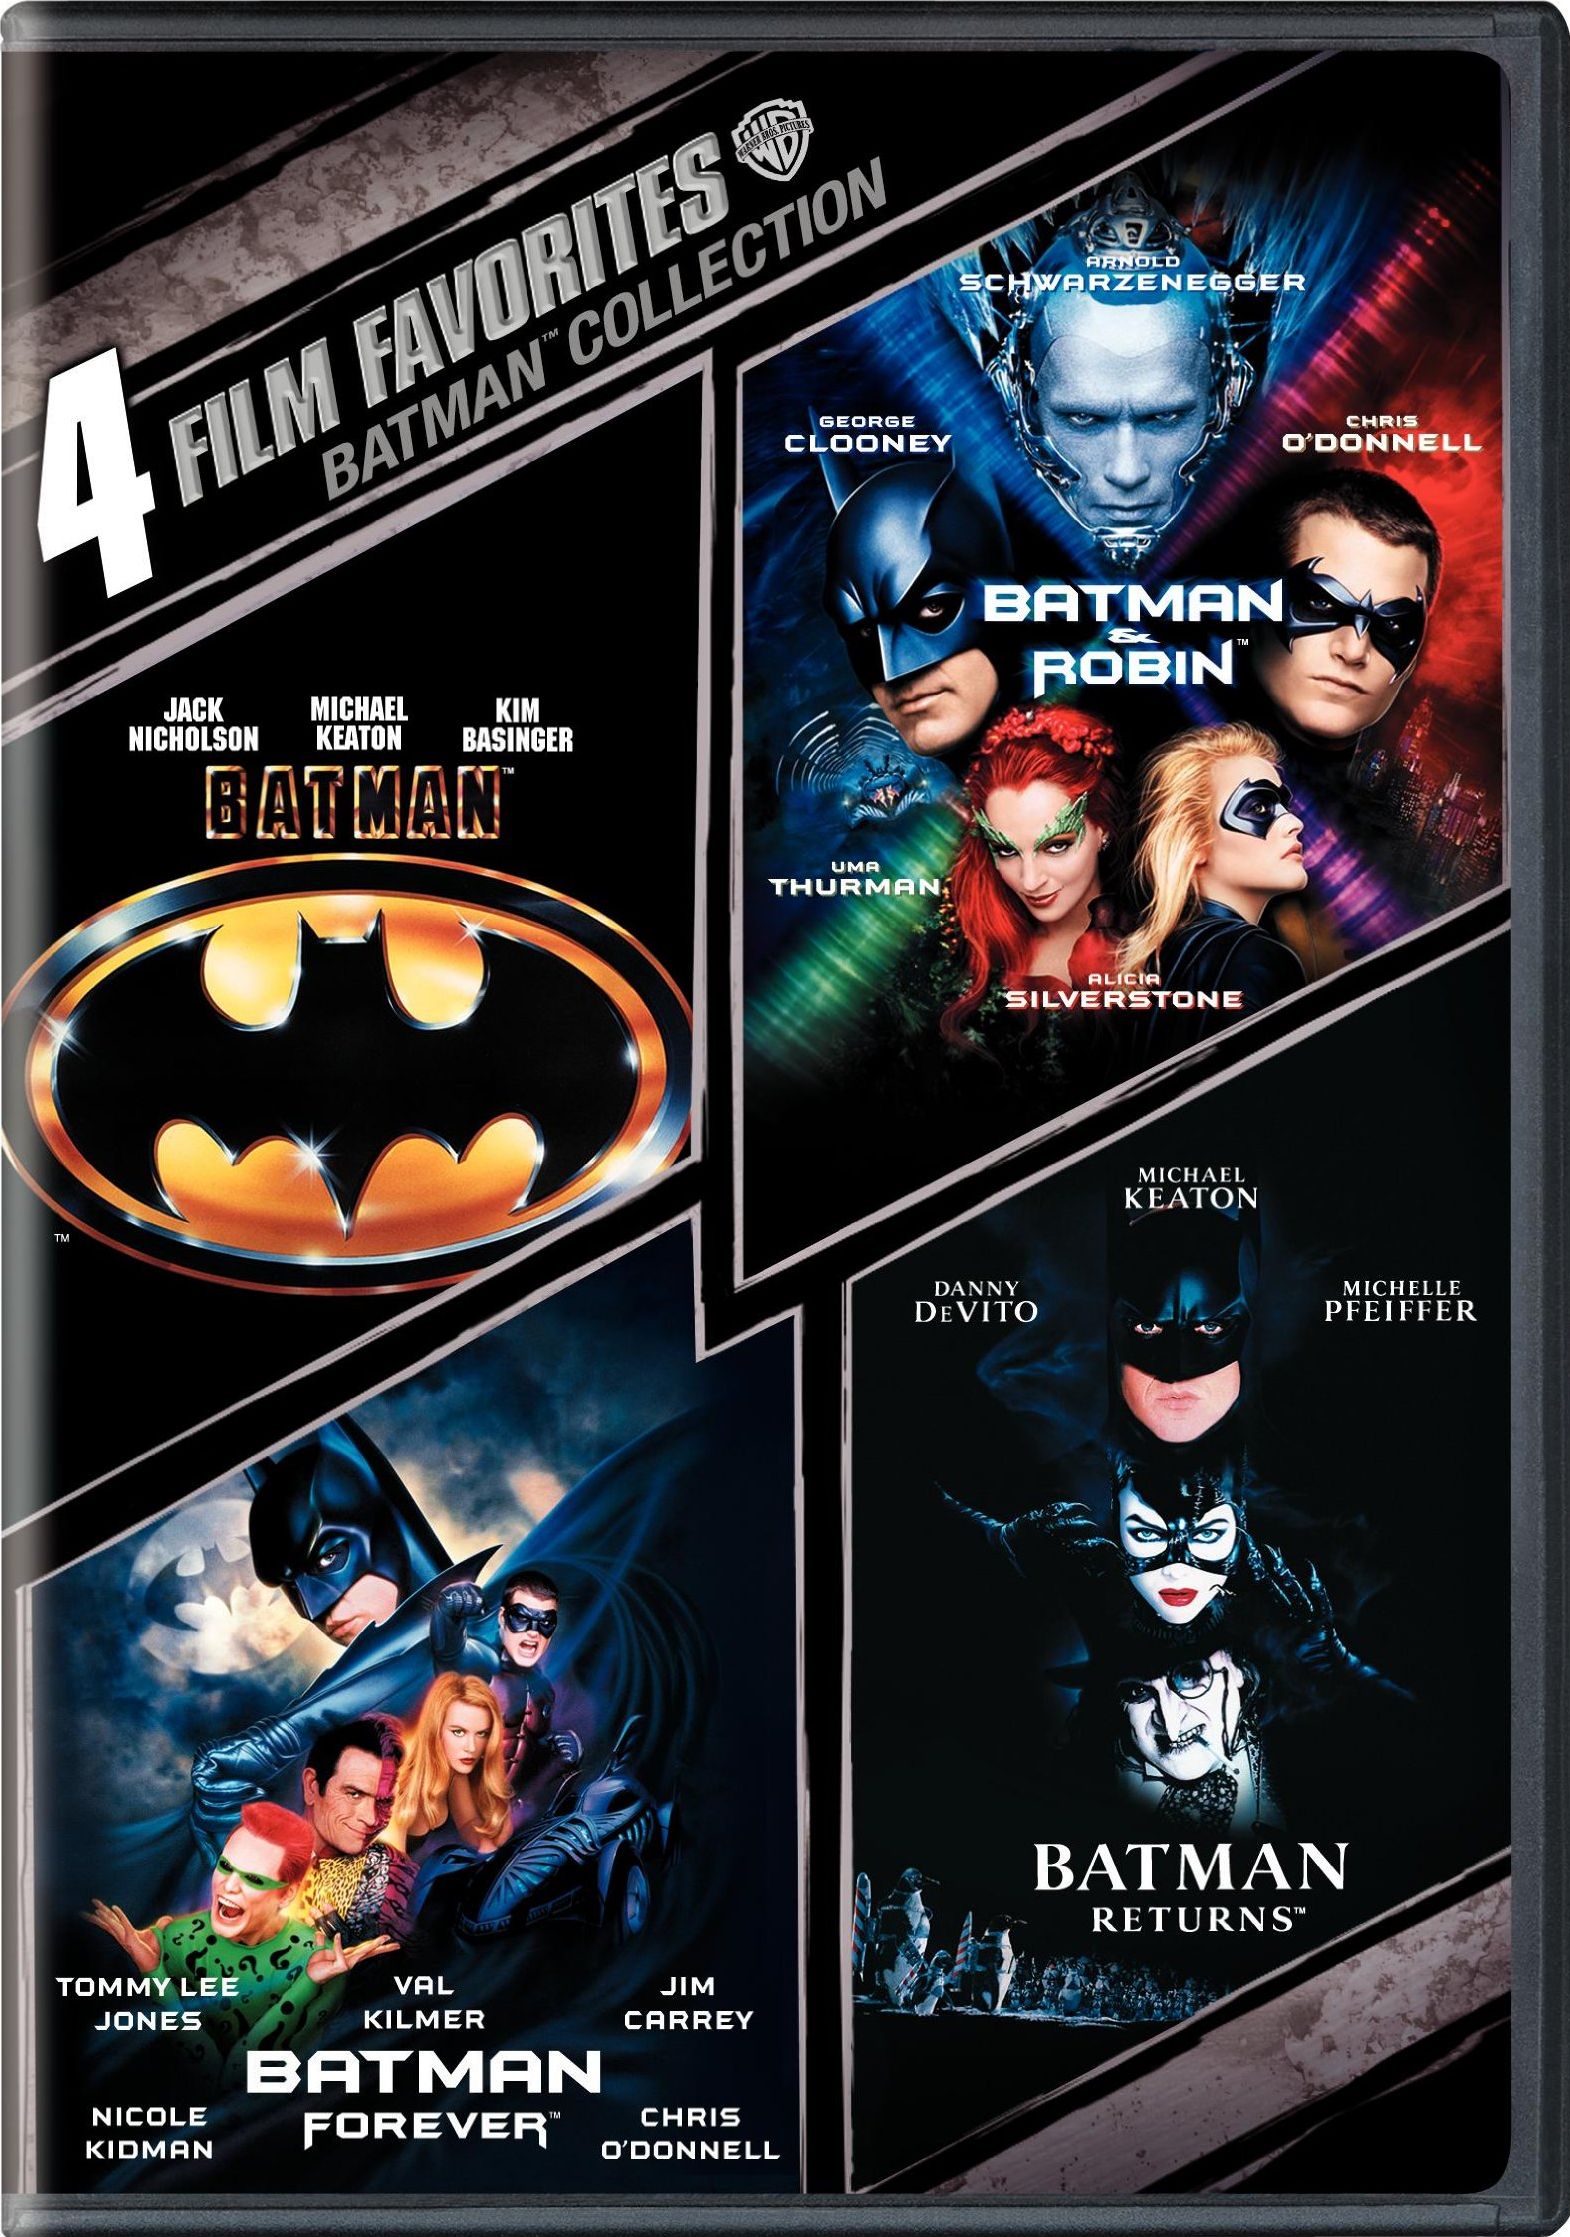 Batman DVD Release Date